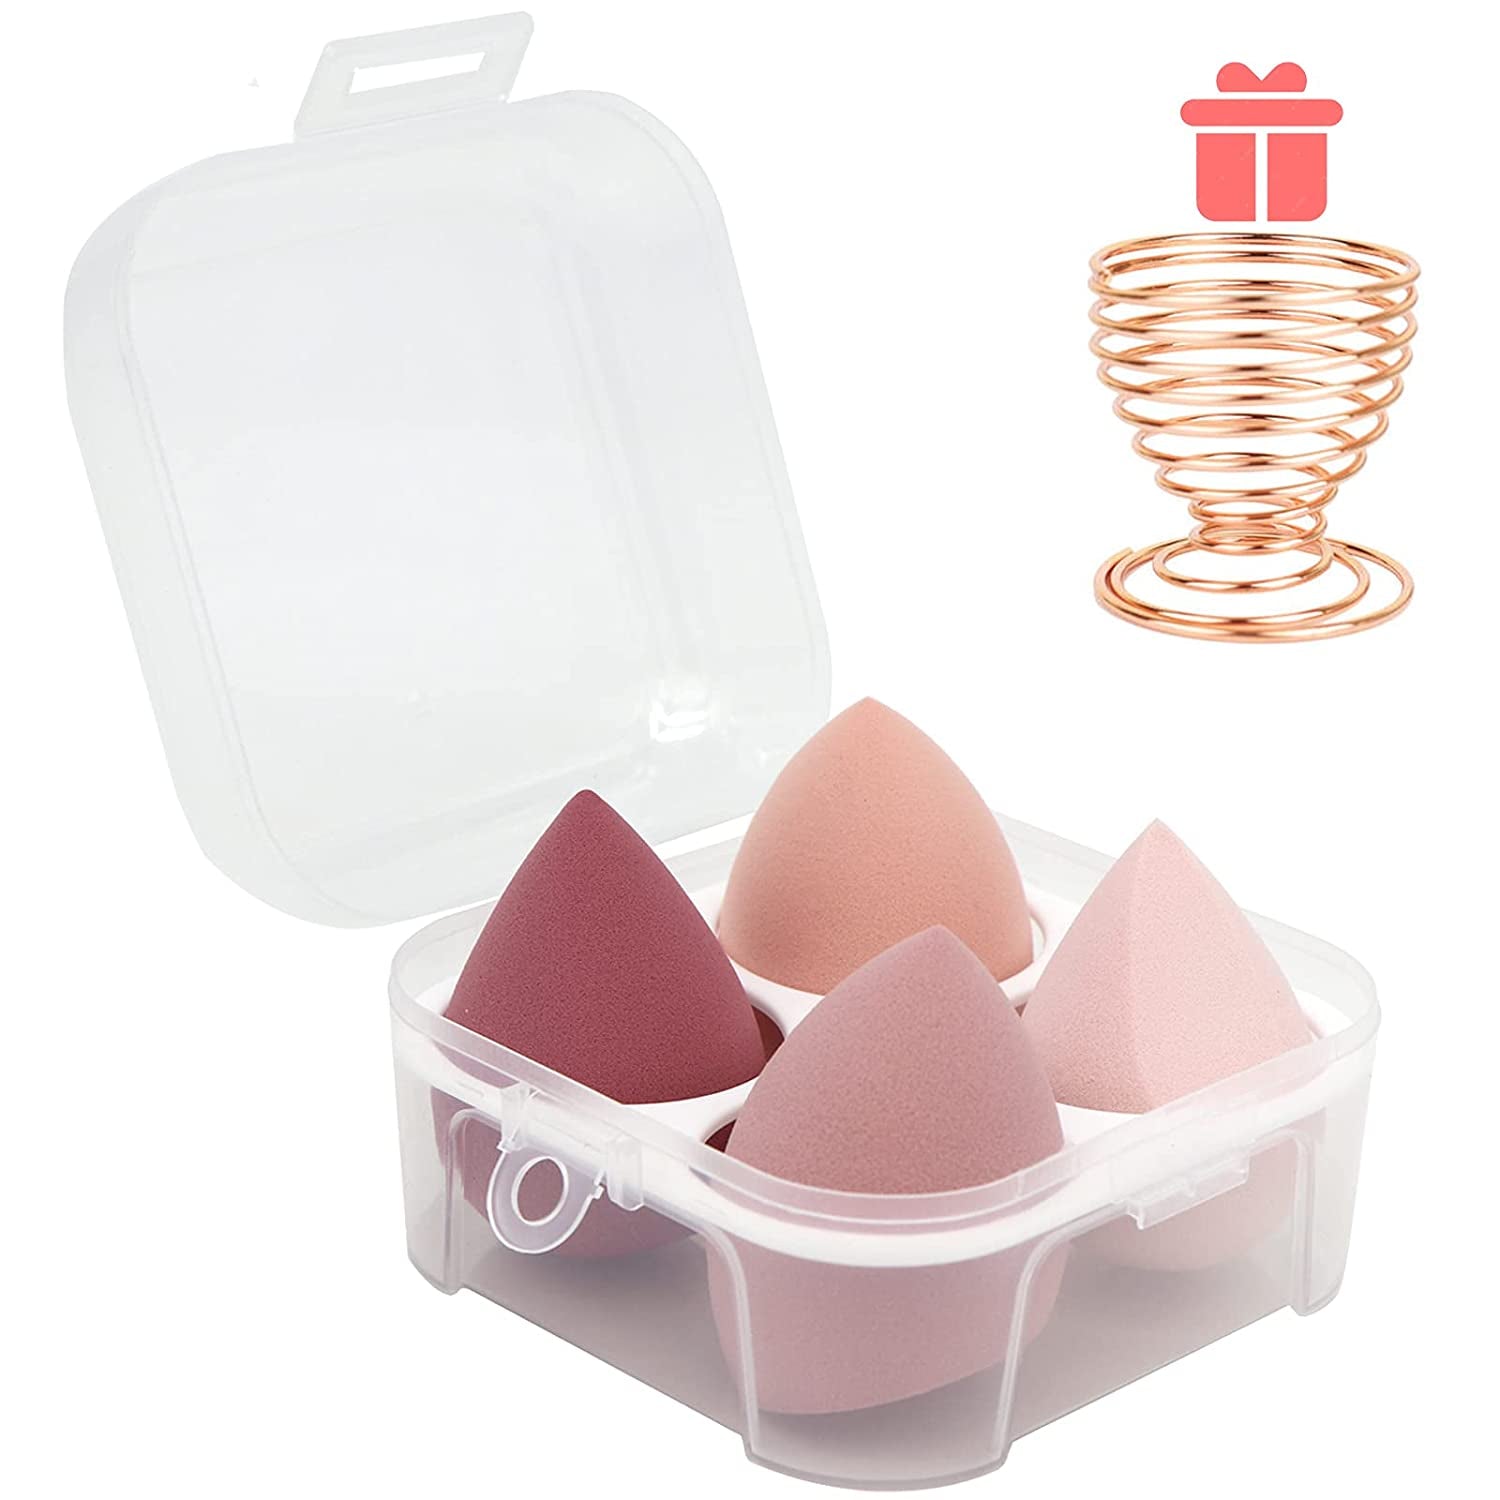 Makeup Sponges Blender Set - Everyday-Sales.com